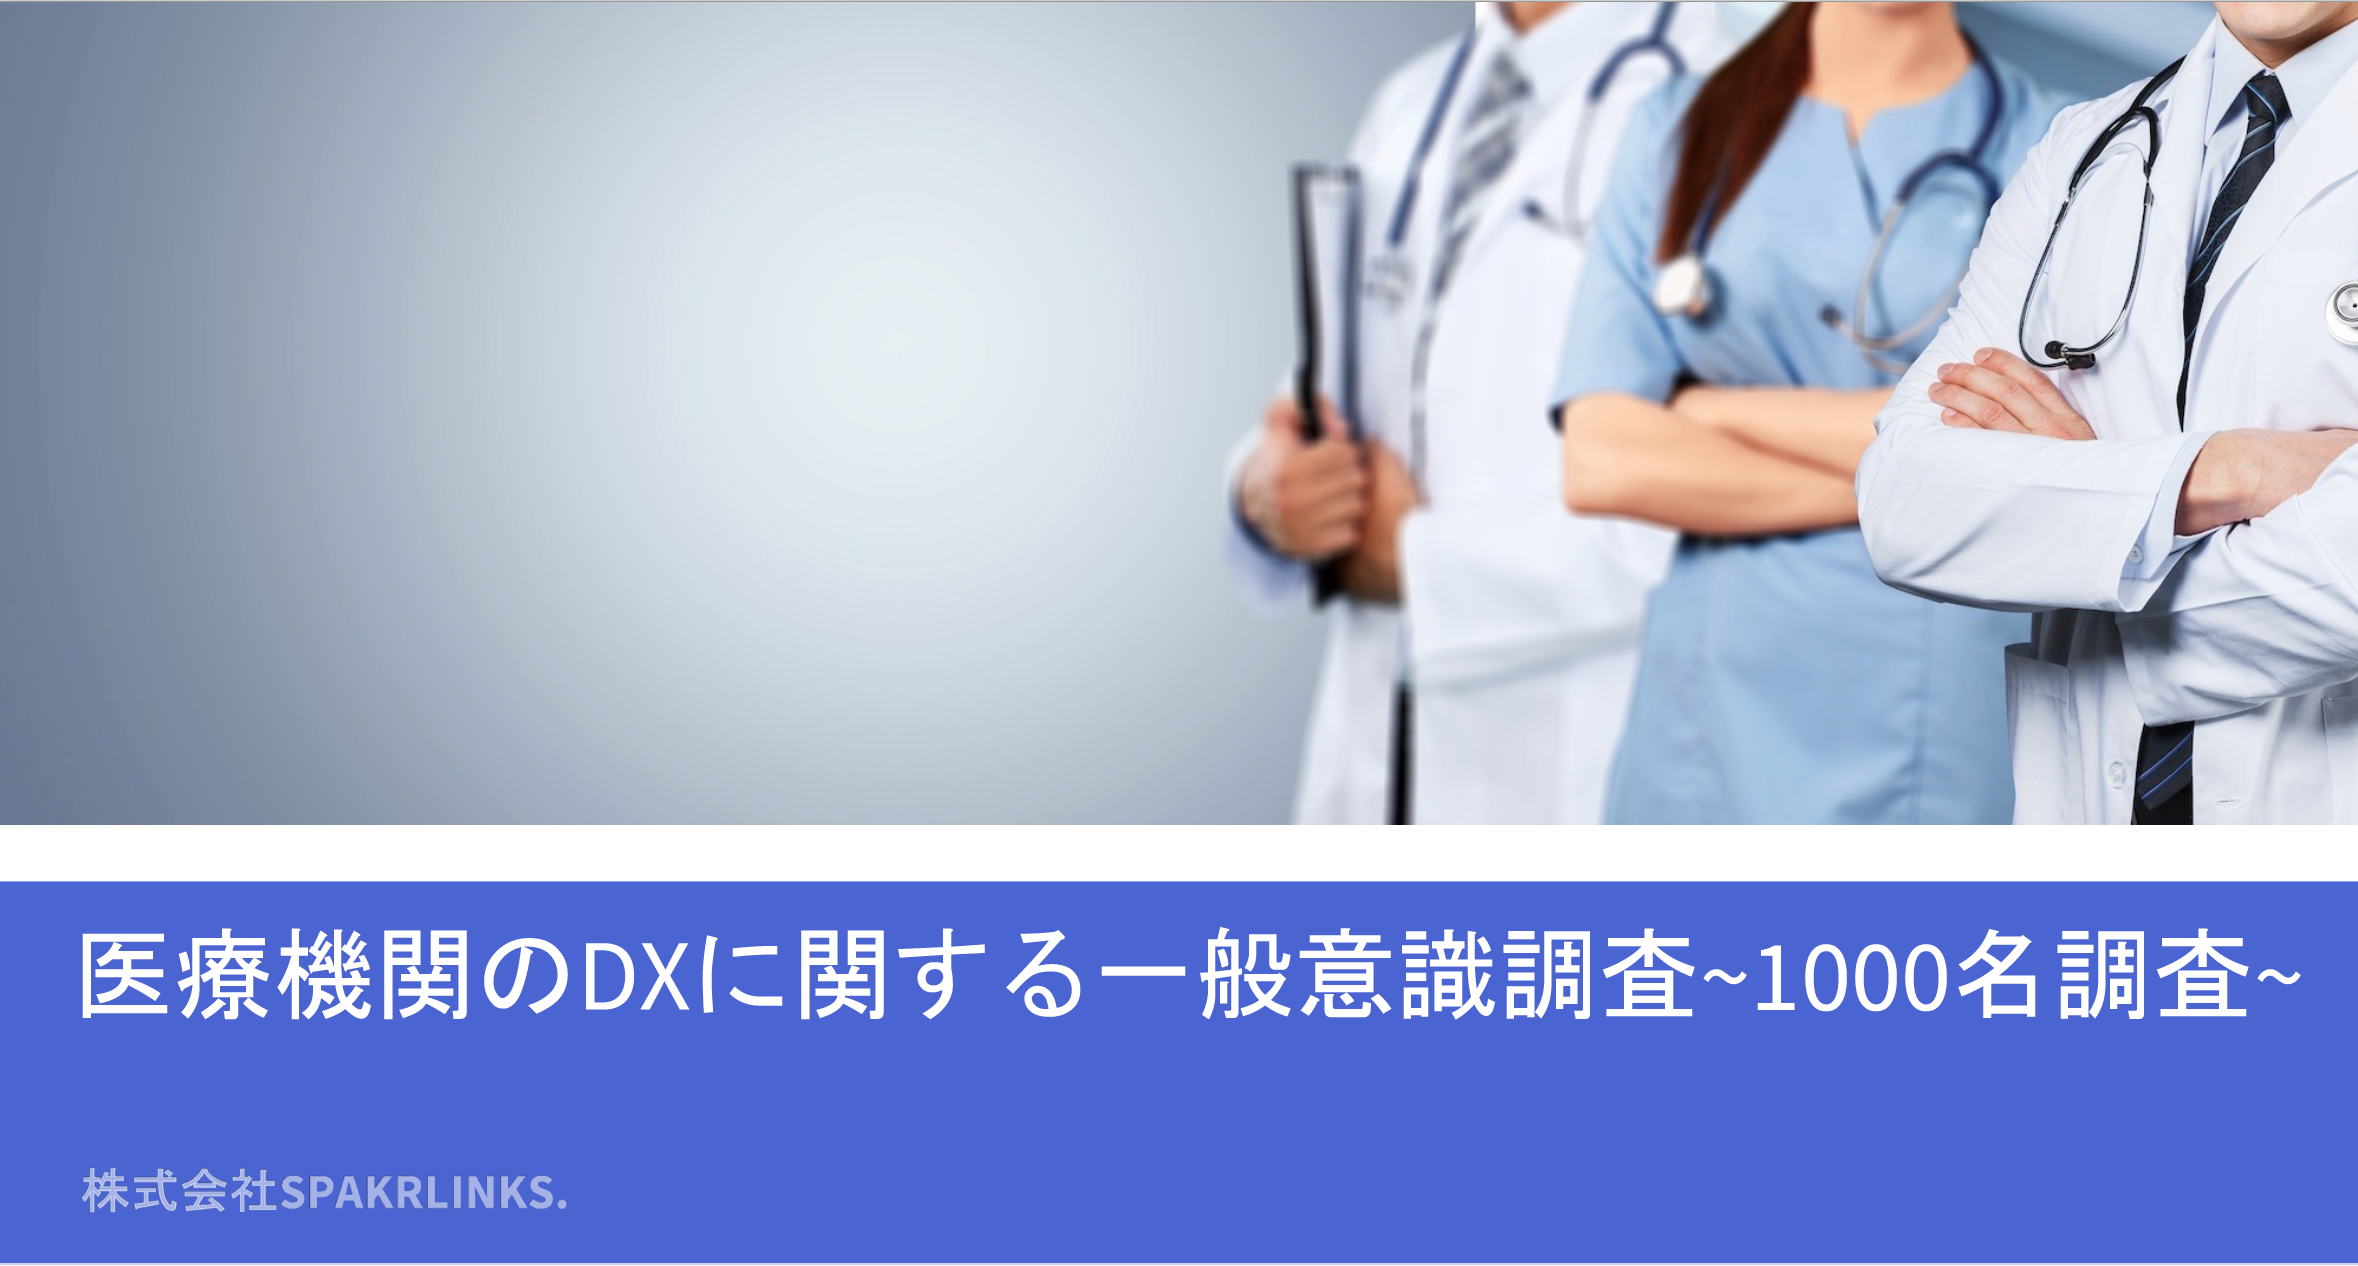 患者さんが望むサービスNo.1は！？医療機関のDXに関する一般意識調査レポート